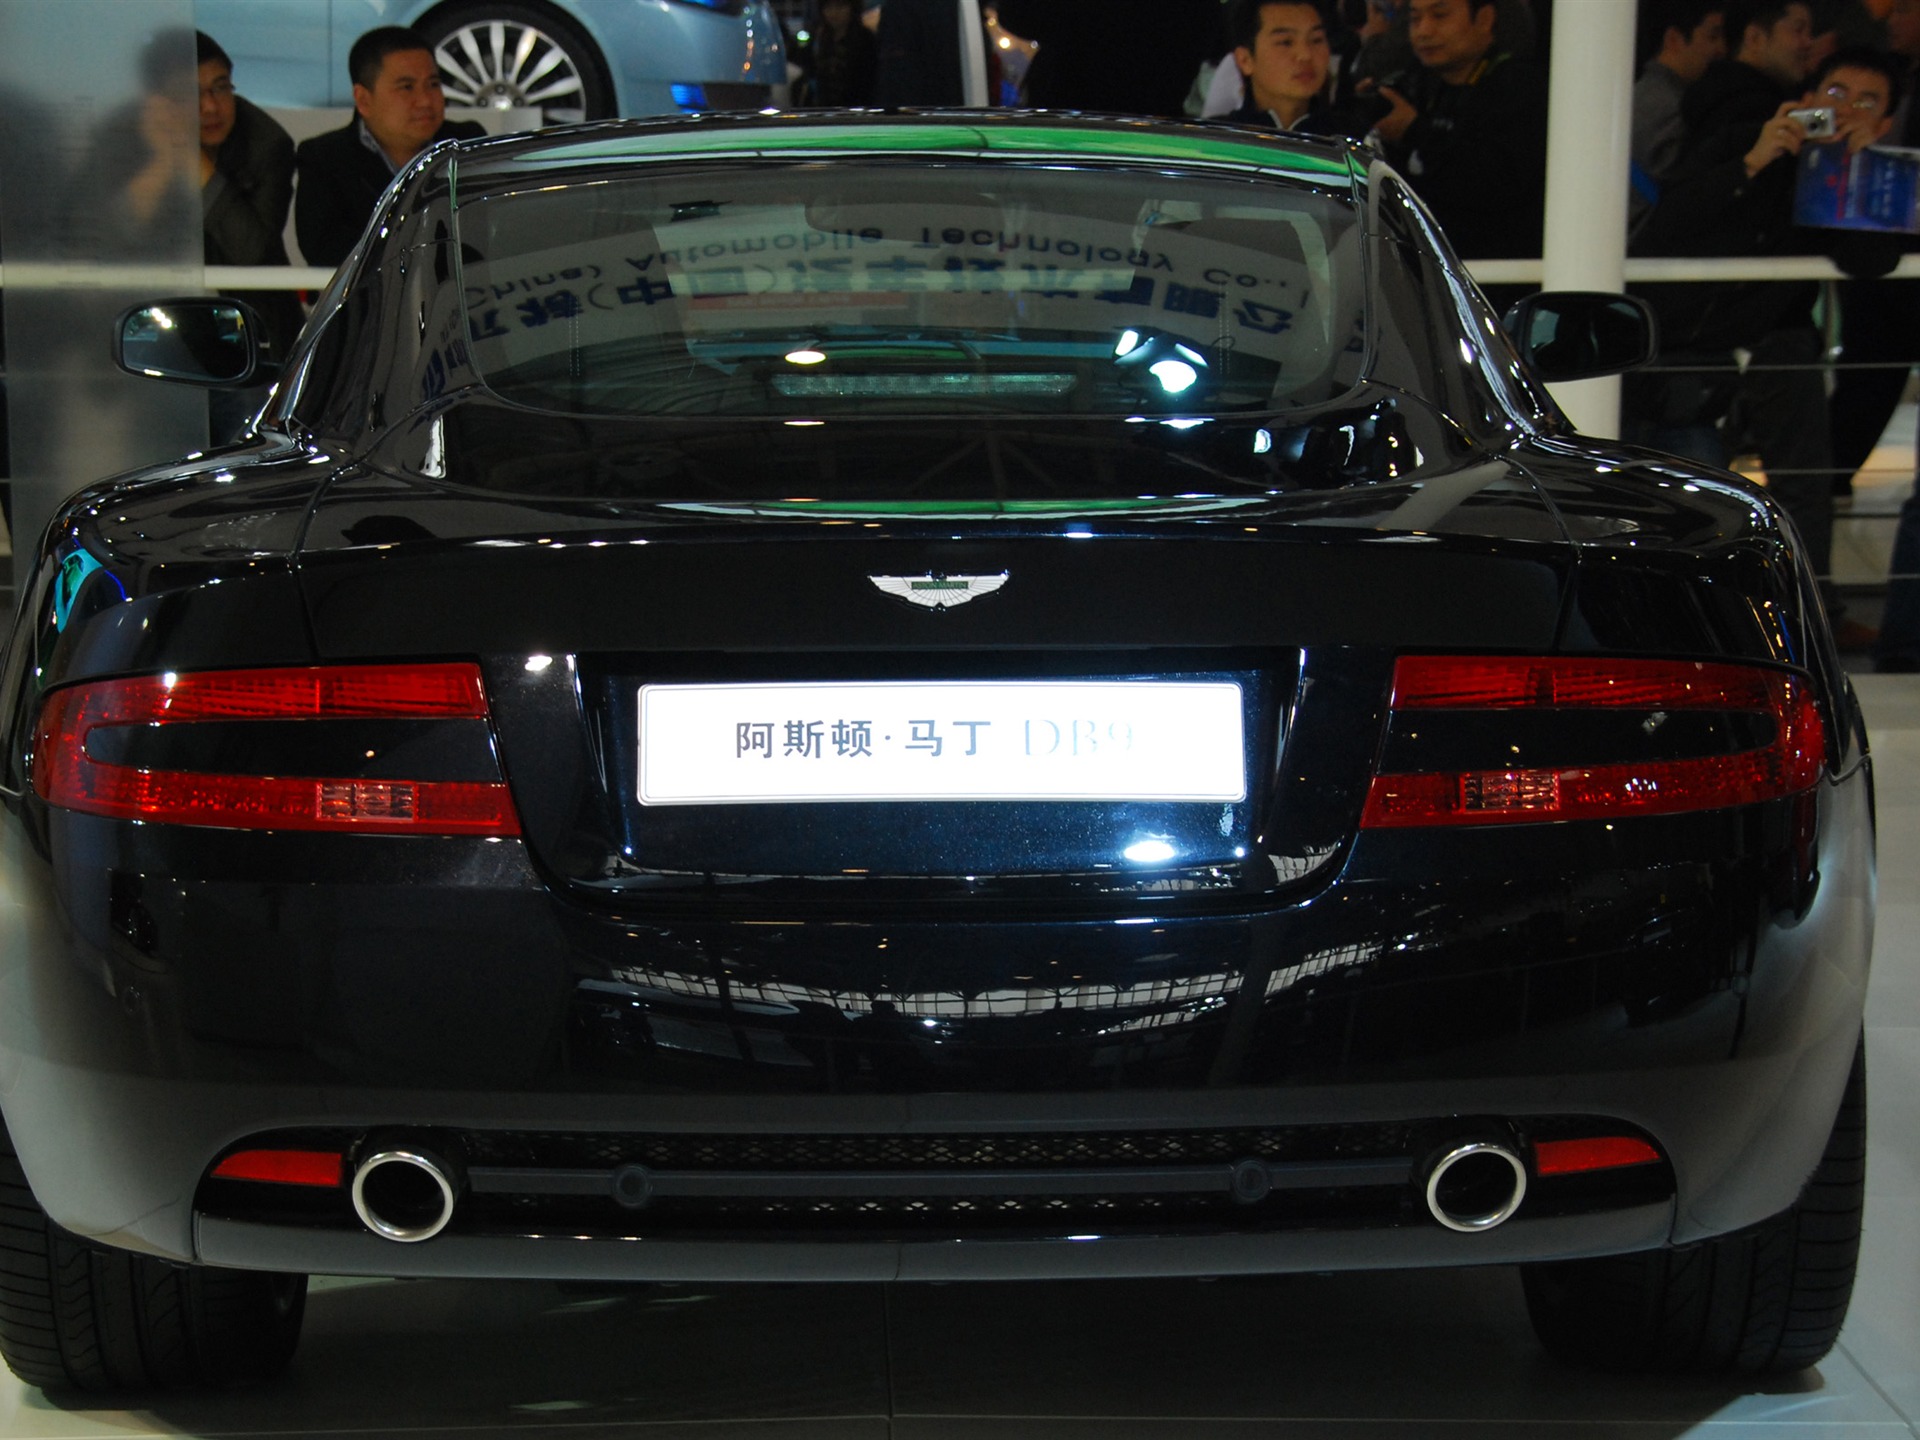 2010北京国际车展(一) (z321x123作品)30 - 1920x1440